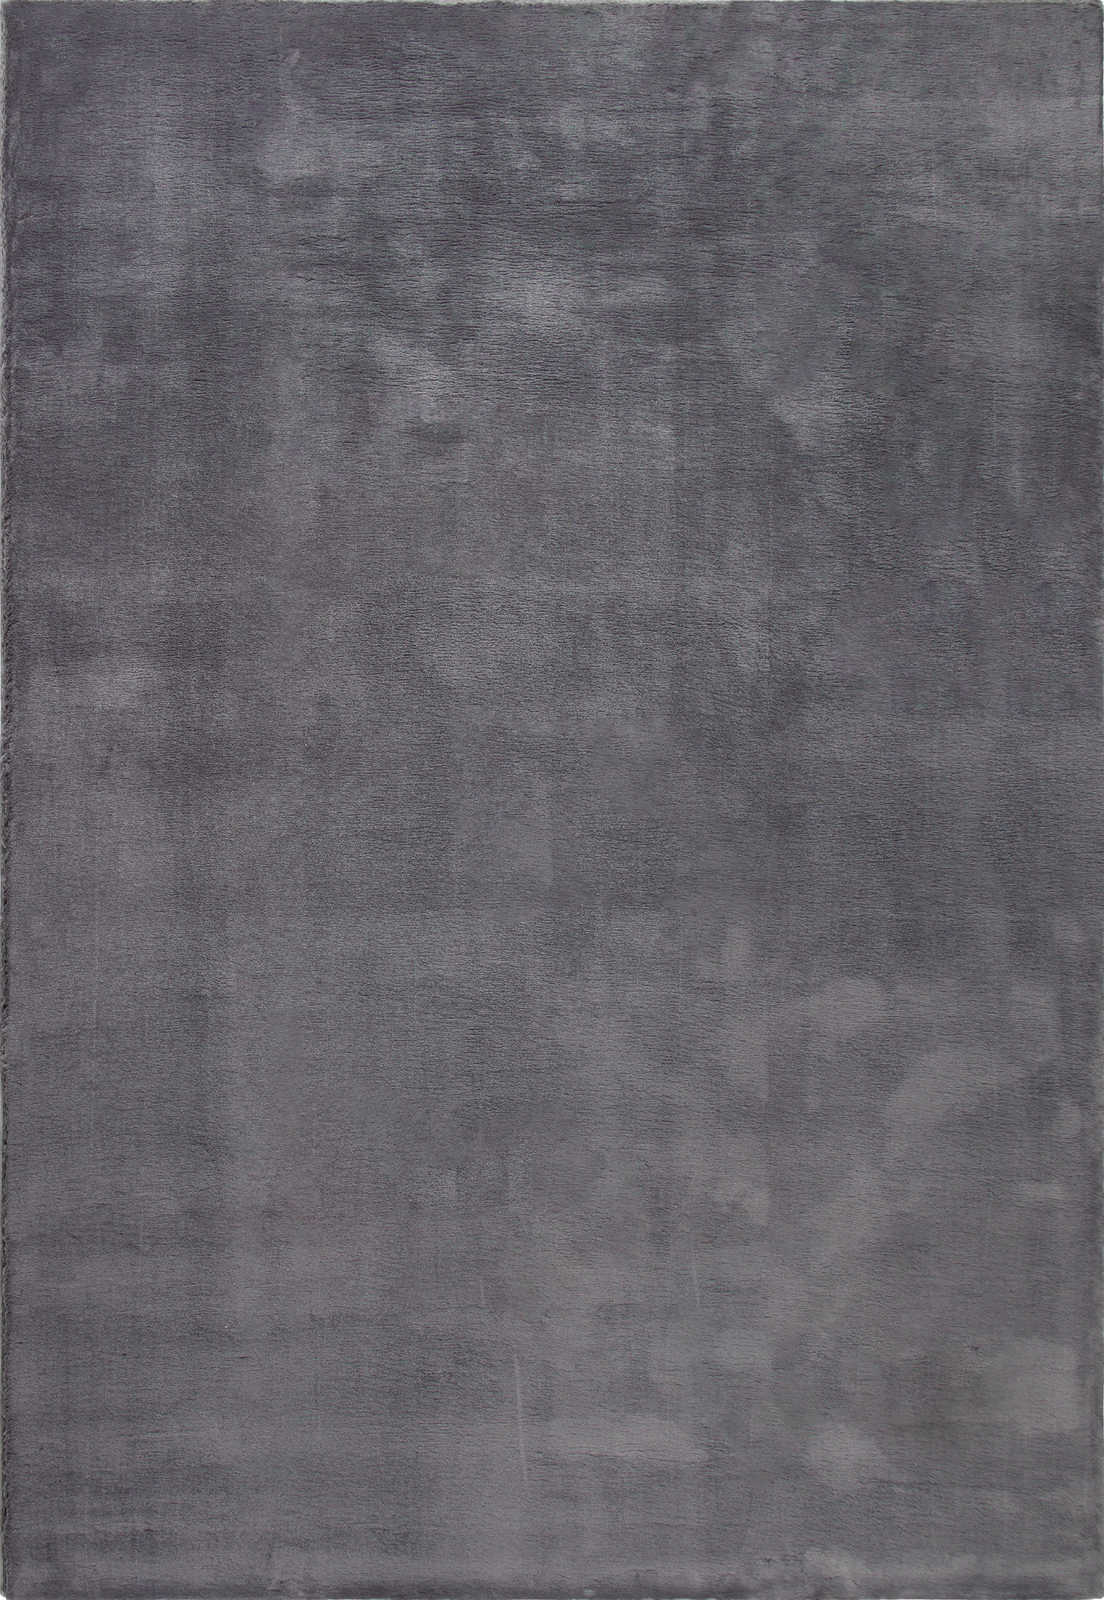             Modern hoogpolig tapijt in antraciet - 170 x 120 cm
        